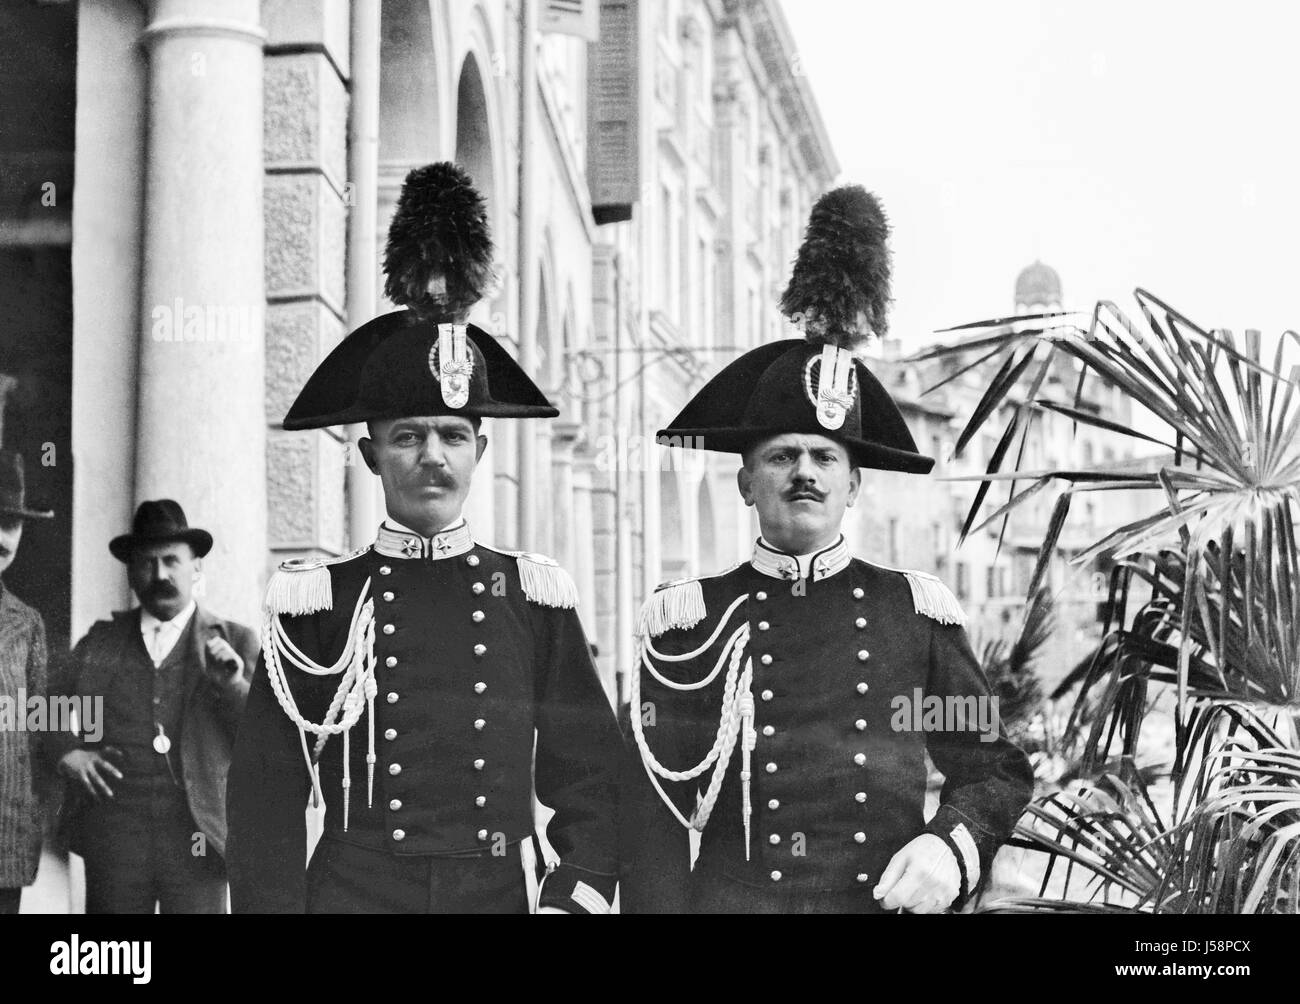 Due Carabinieri in pieno abito posa uniforme per la telecamera su una strada di città nel 1900. Ripristinato da una scansione ad alta risoluzione prese dal negativo originale. Foto Stock